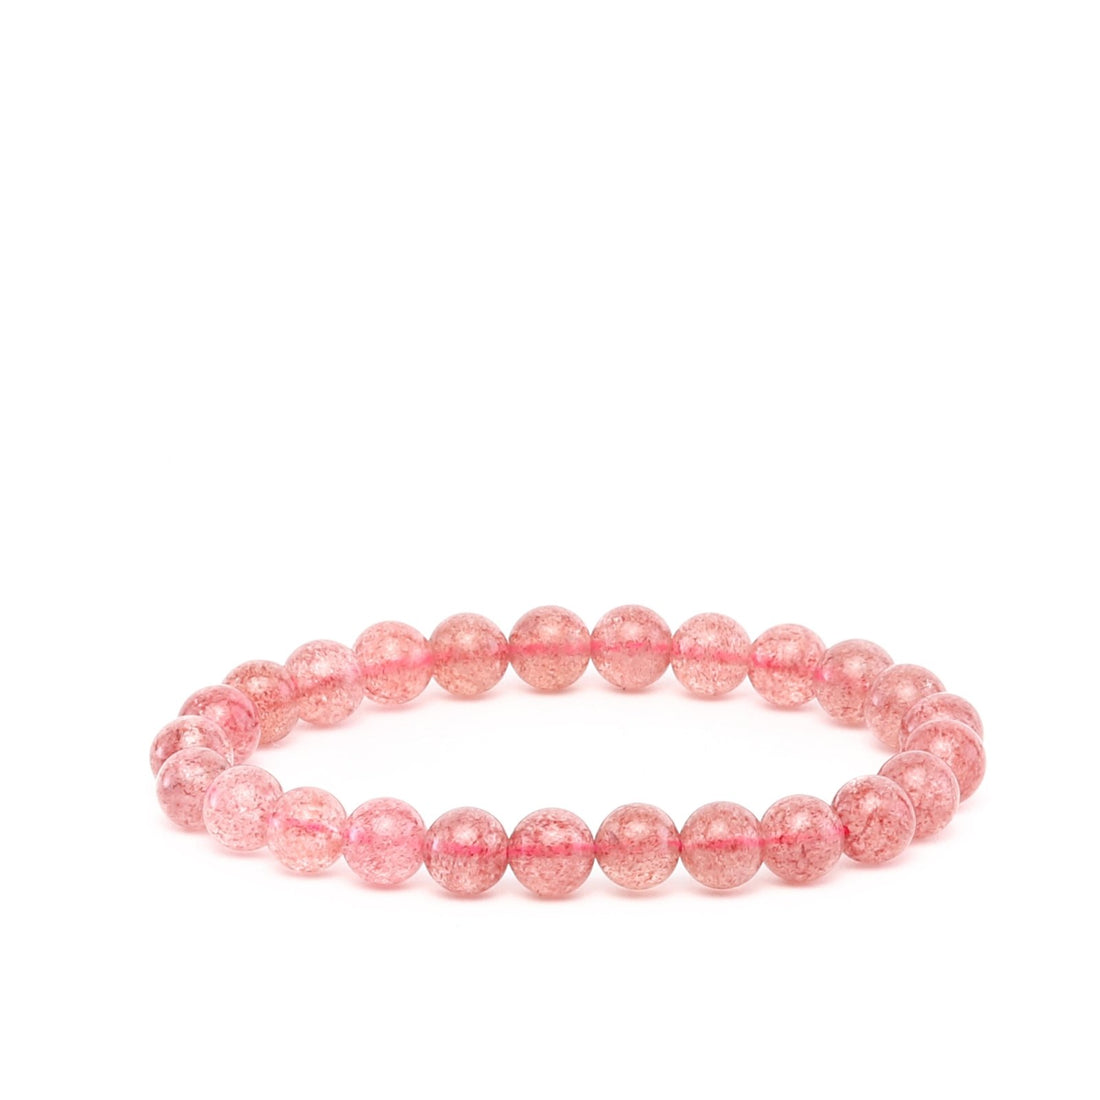 Strawberry Quartz Bracelet - Ele Keats Jewelry